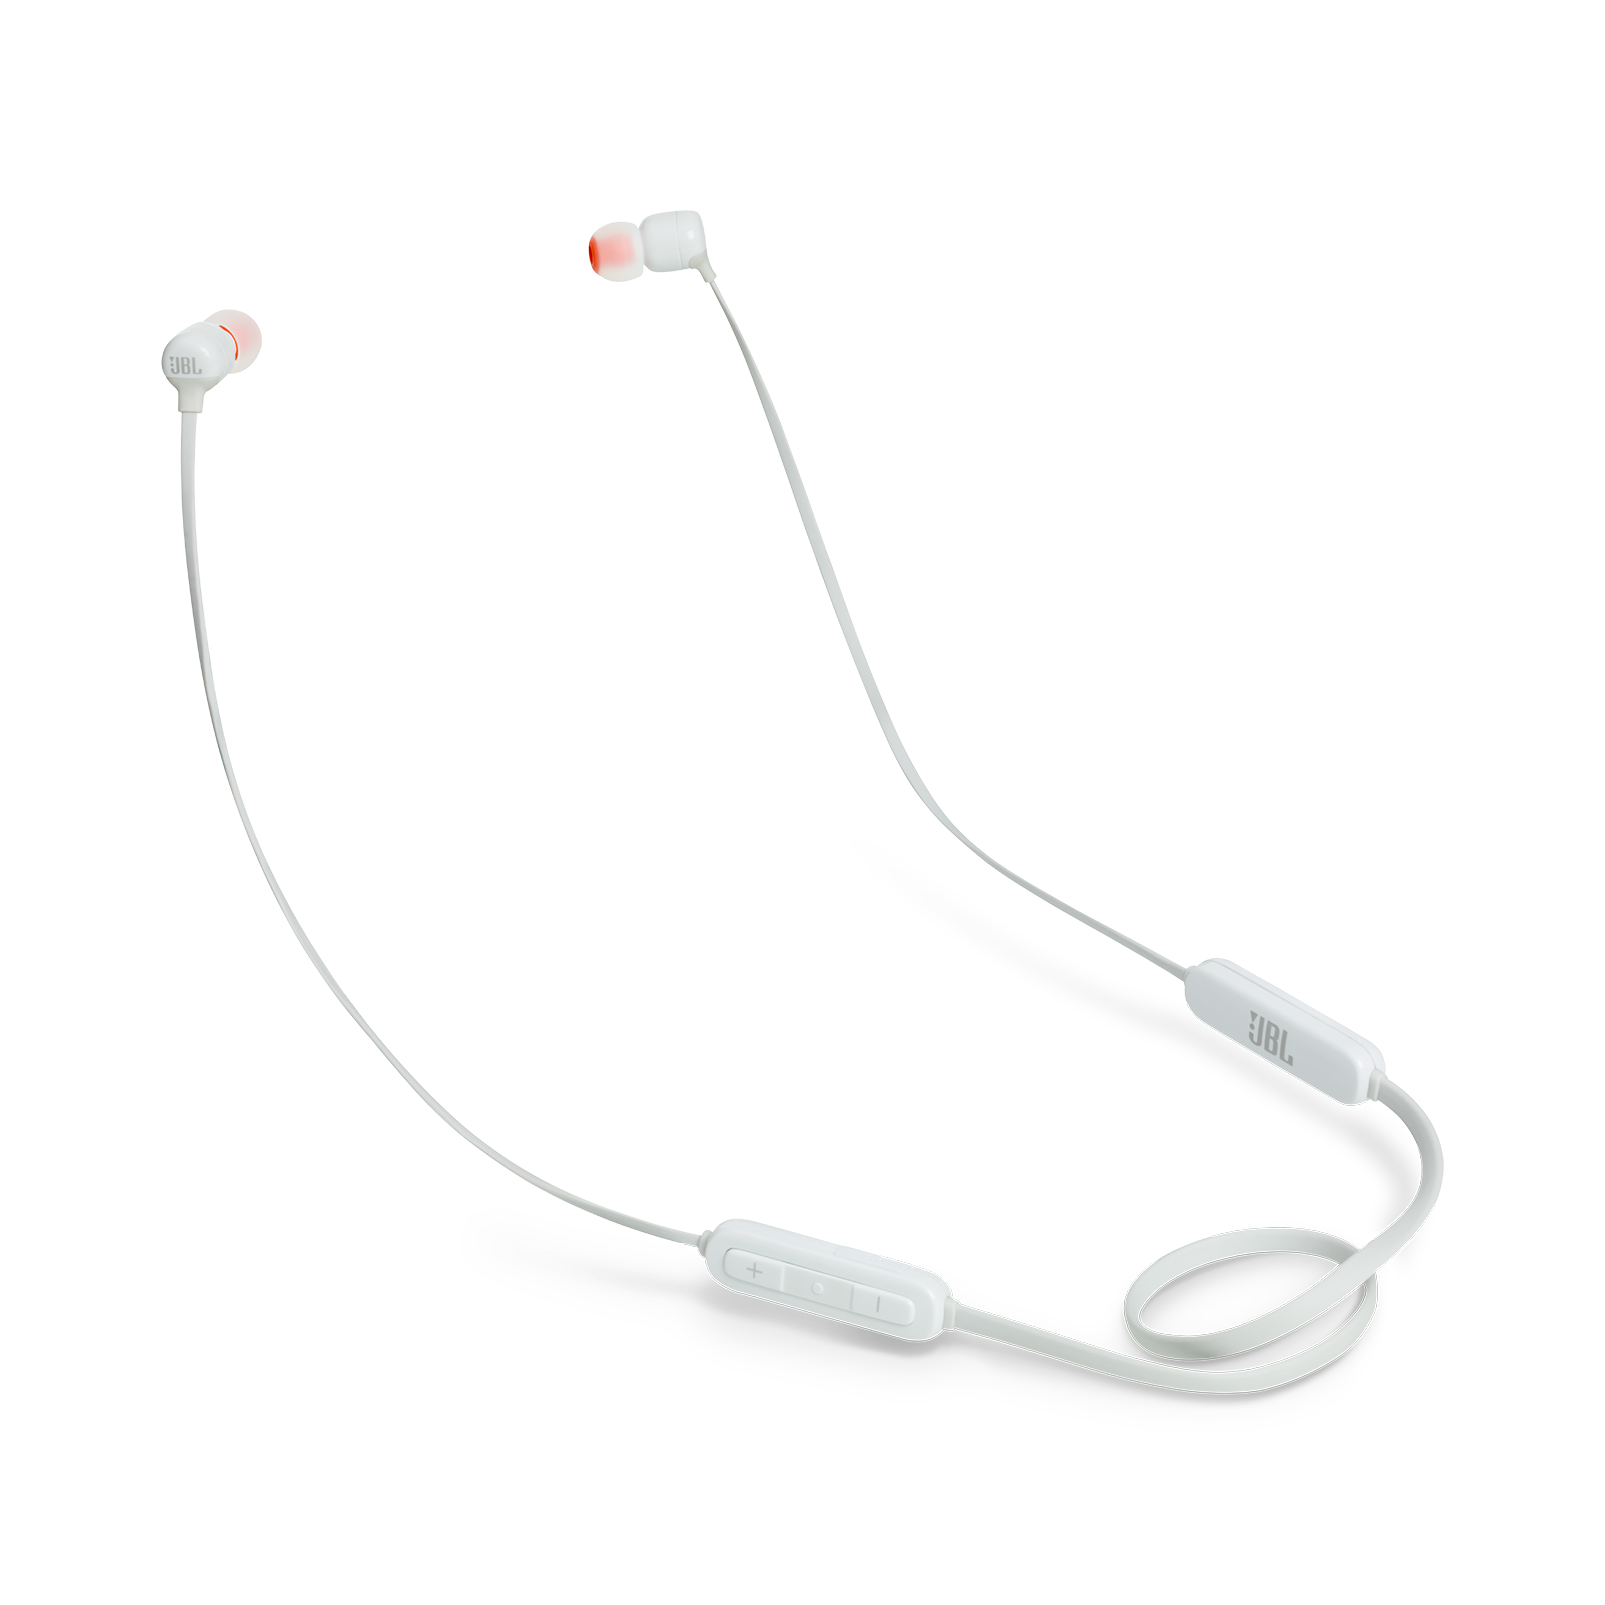 JBL Tune 160BT - White - Wireless in-ear headphones - Hero